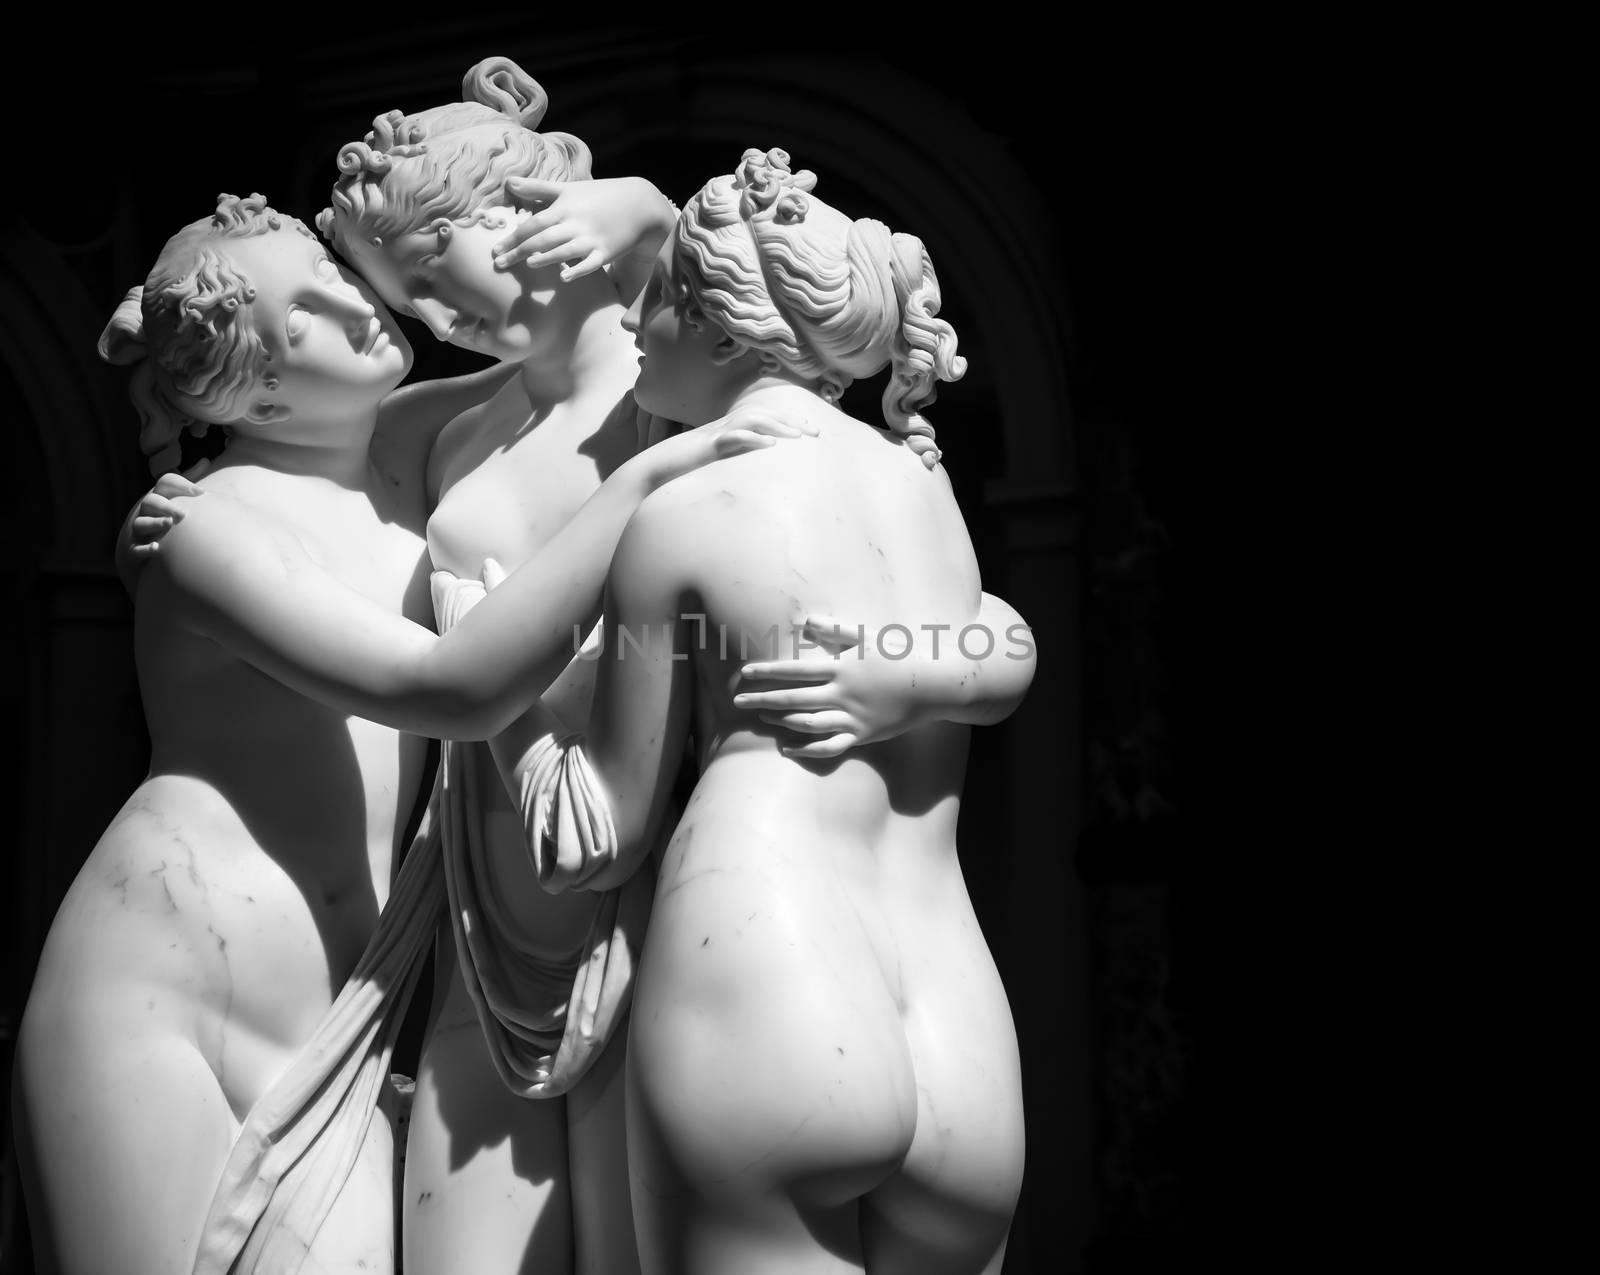 The Three Graces (Le tre grazie) by Antonio Canova by Perseomedusa